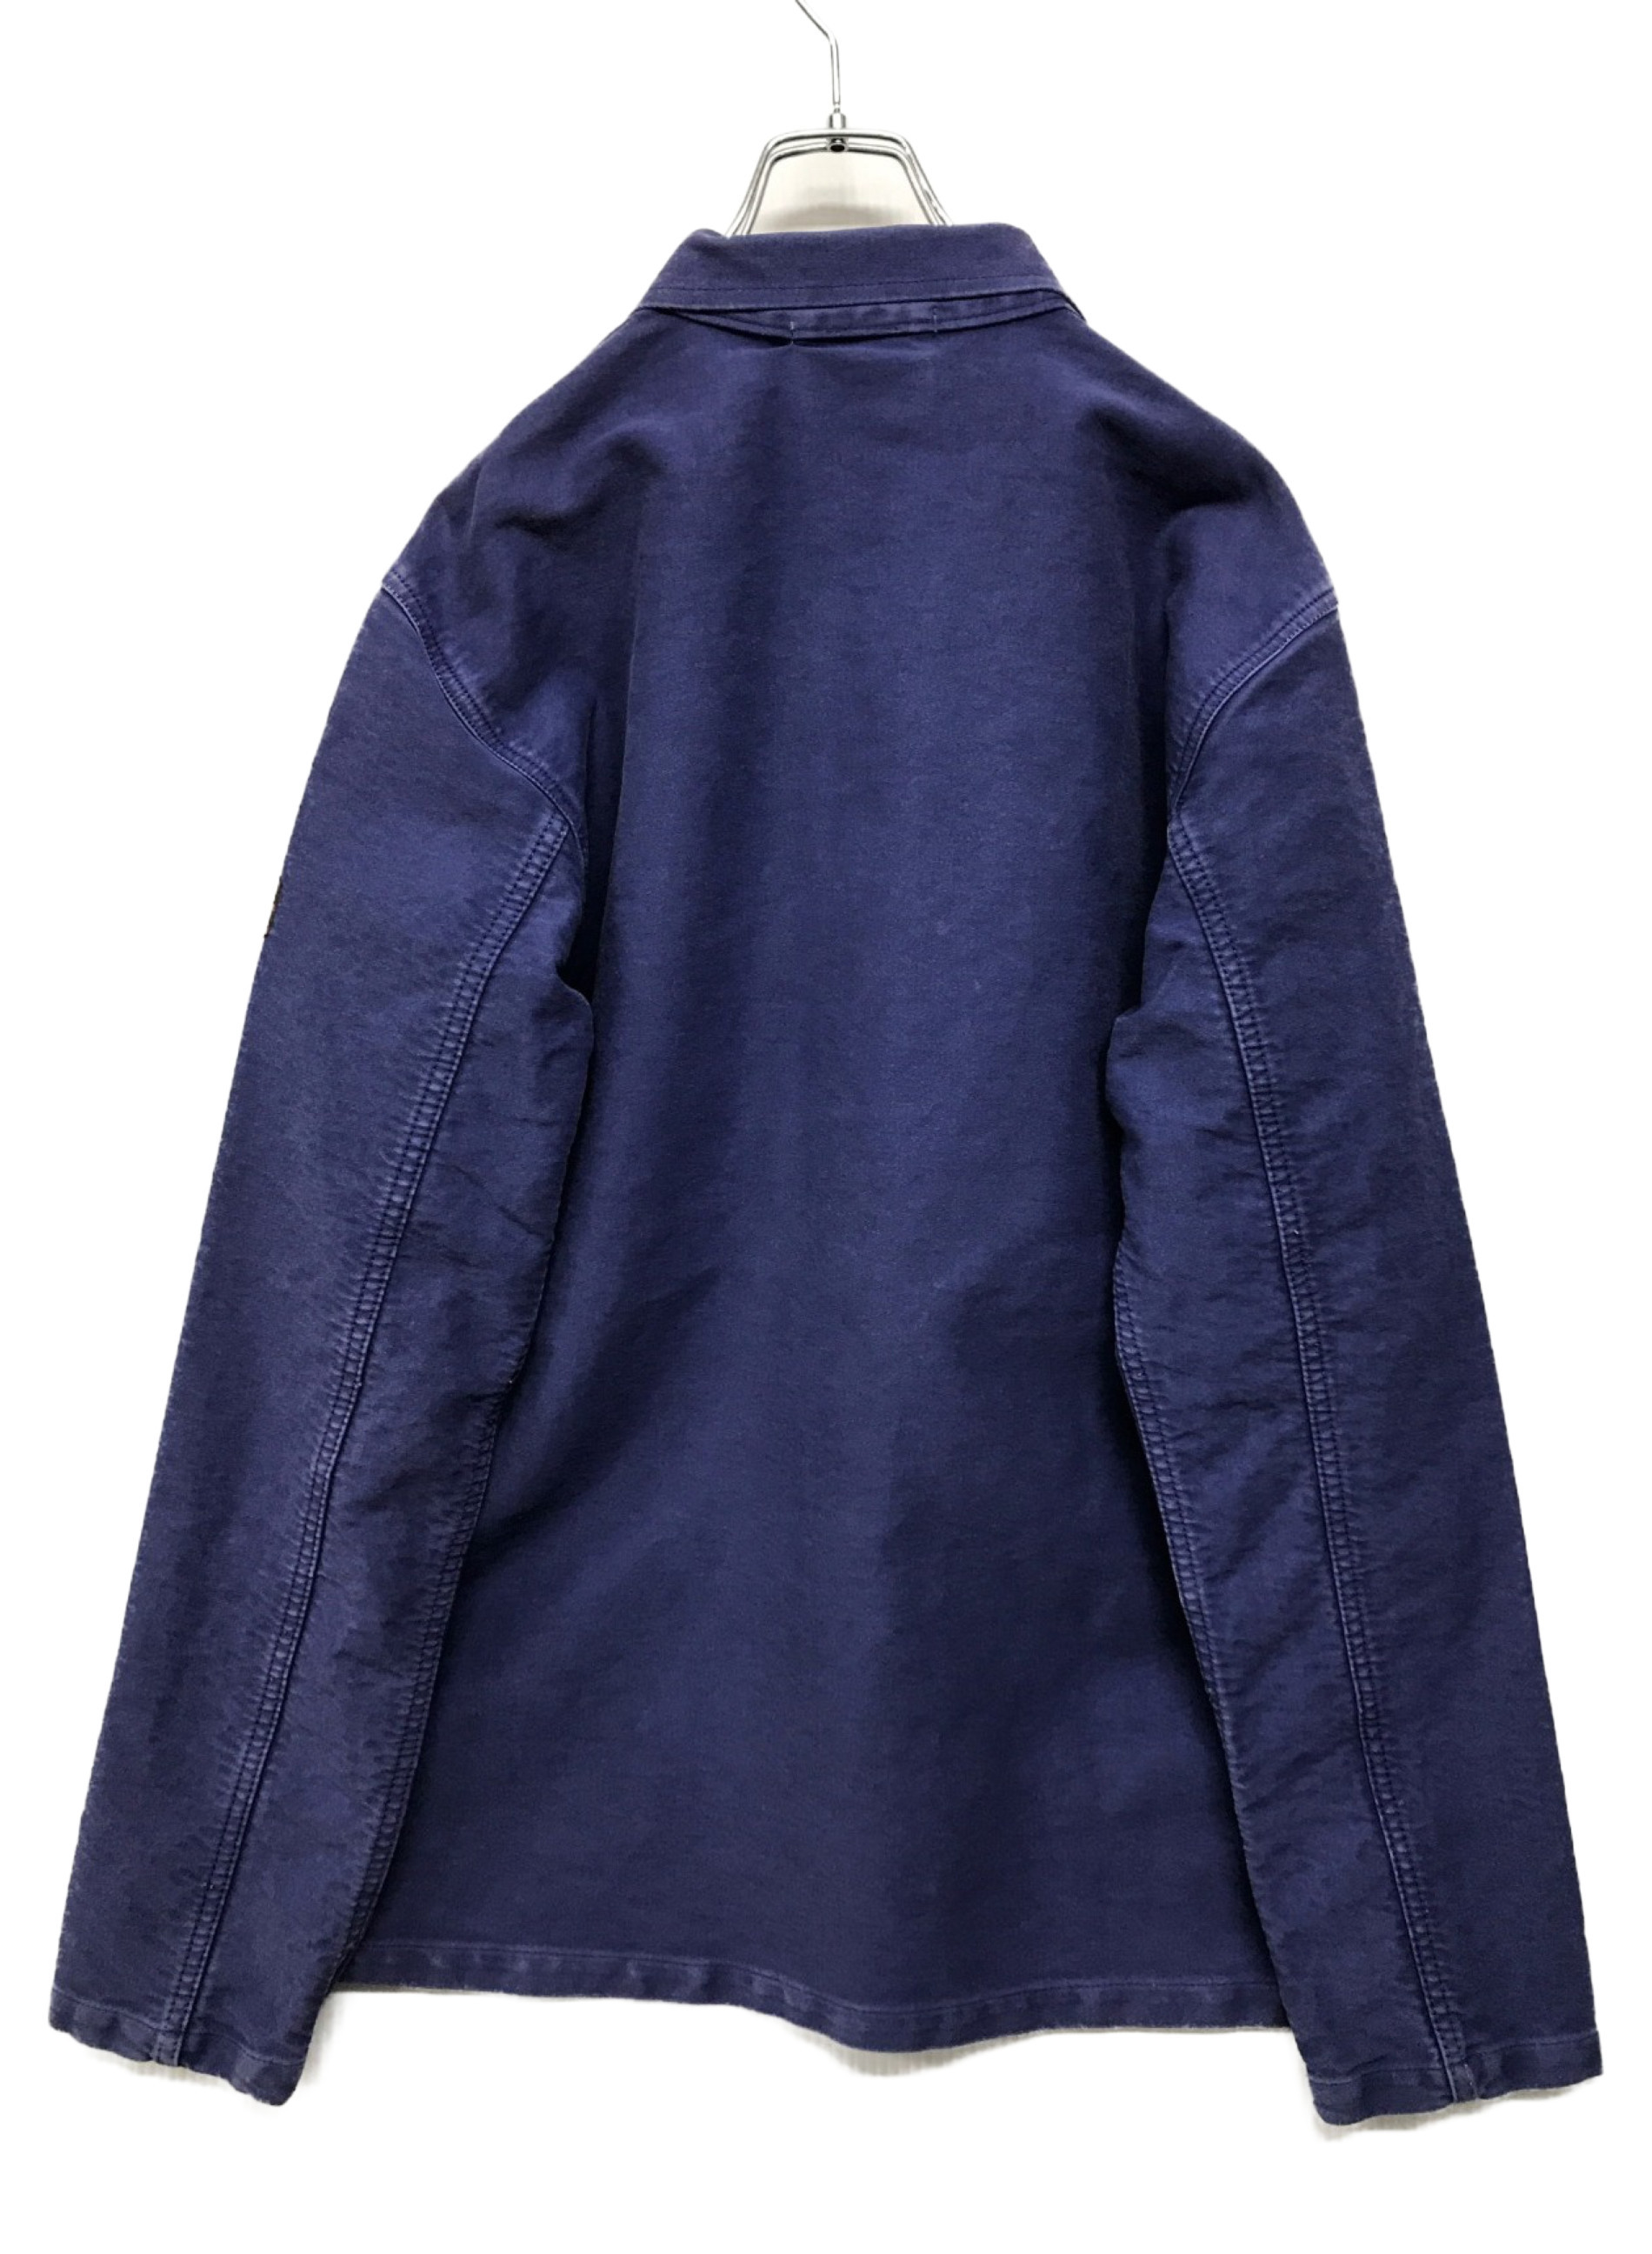 LA MARINIERE FRANCAISE (マリネール フランセイズ) モールスキンフレンチワークジャケット ブルー サイズ:Ｌ